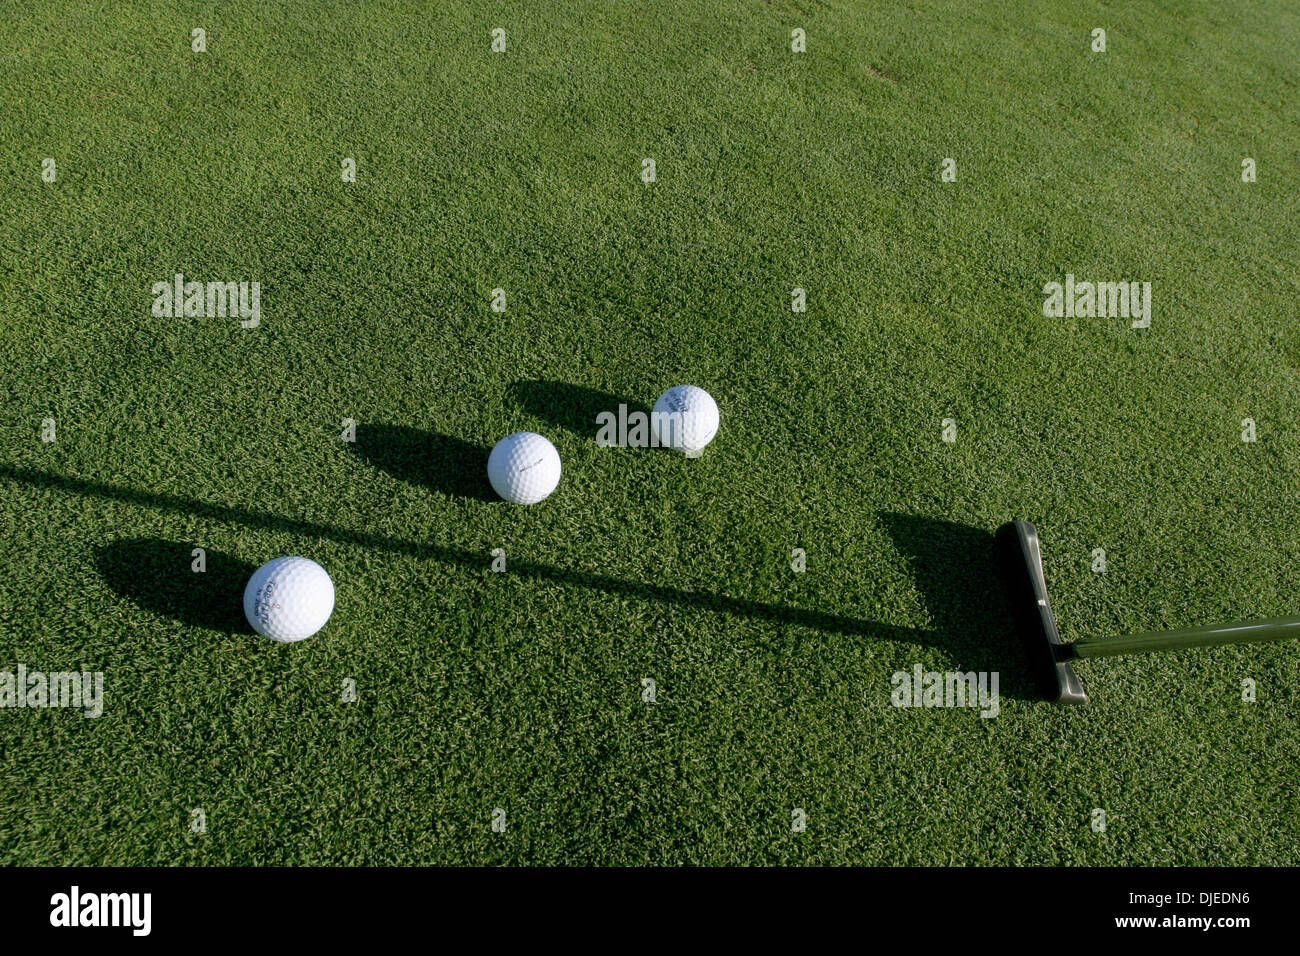 Sep 01, 2004; Los Angeles, Kalifornien, USA; Golfbälle und Putter in einem der vielen driving Ranges in Südkalifornien. Spiel des Golfs, Puttinggreen. Stockfoto